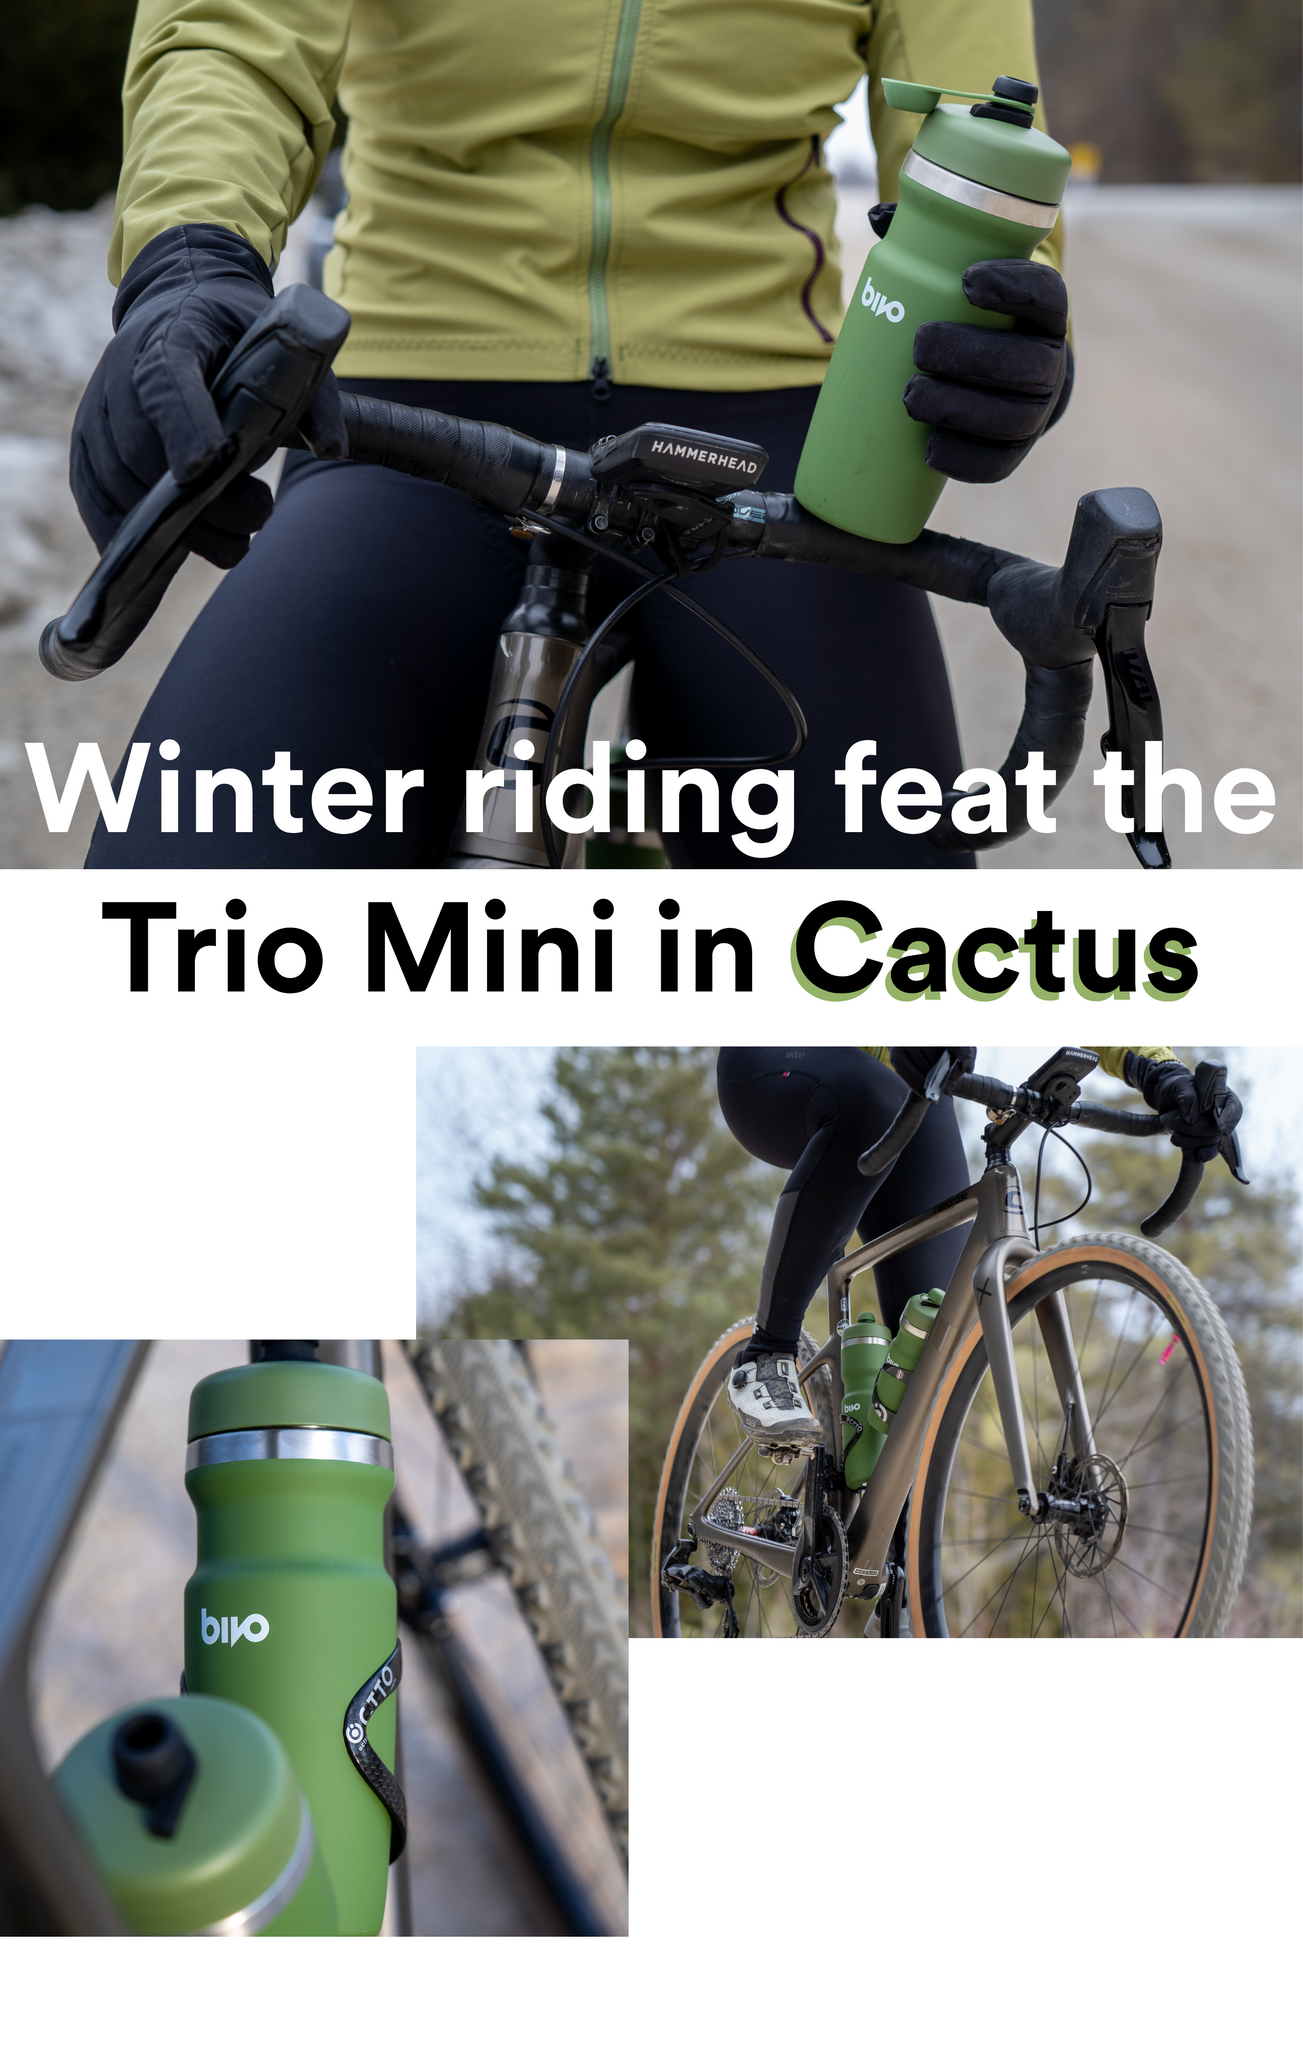 winter riding featuring the trio mini in cactus